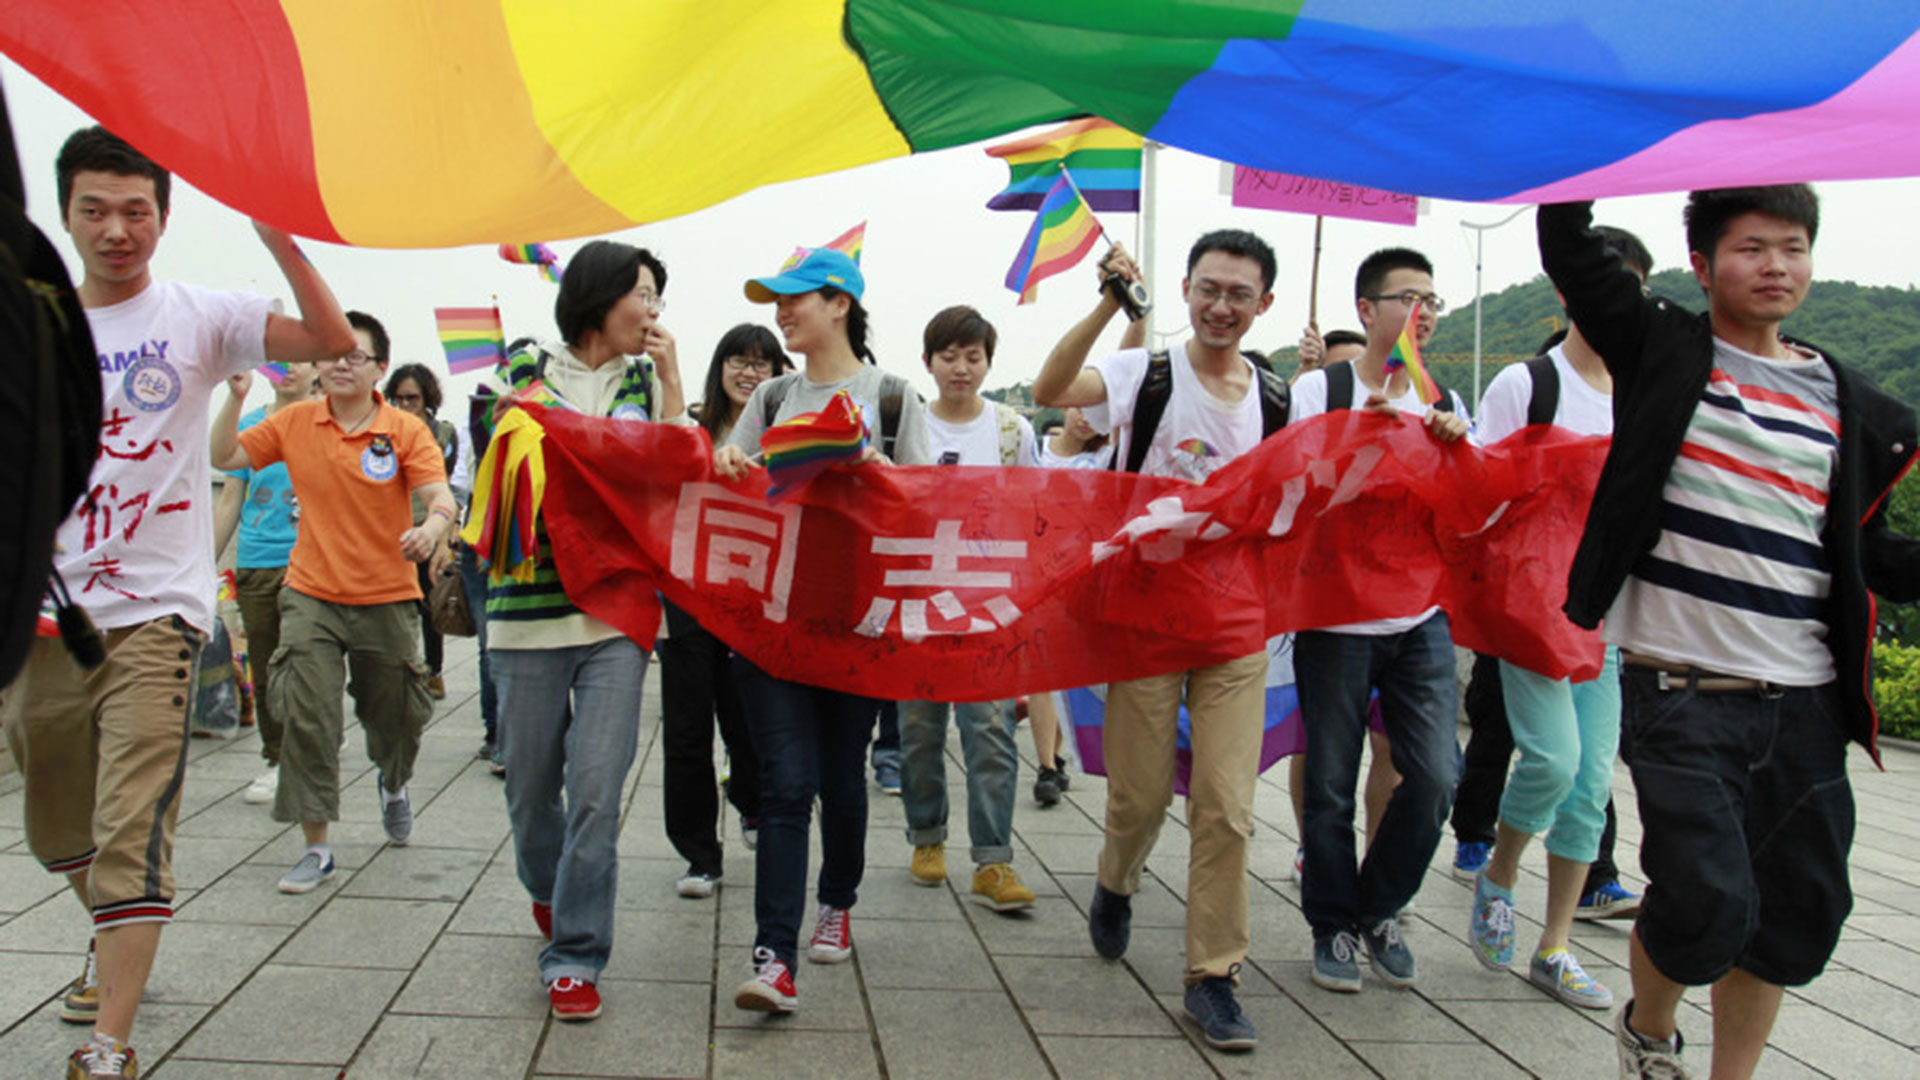 Por qué el comunismo chino teme darle derechos a los gays